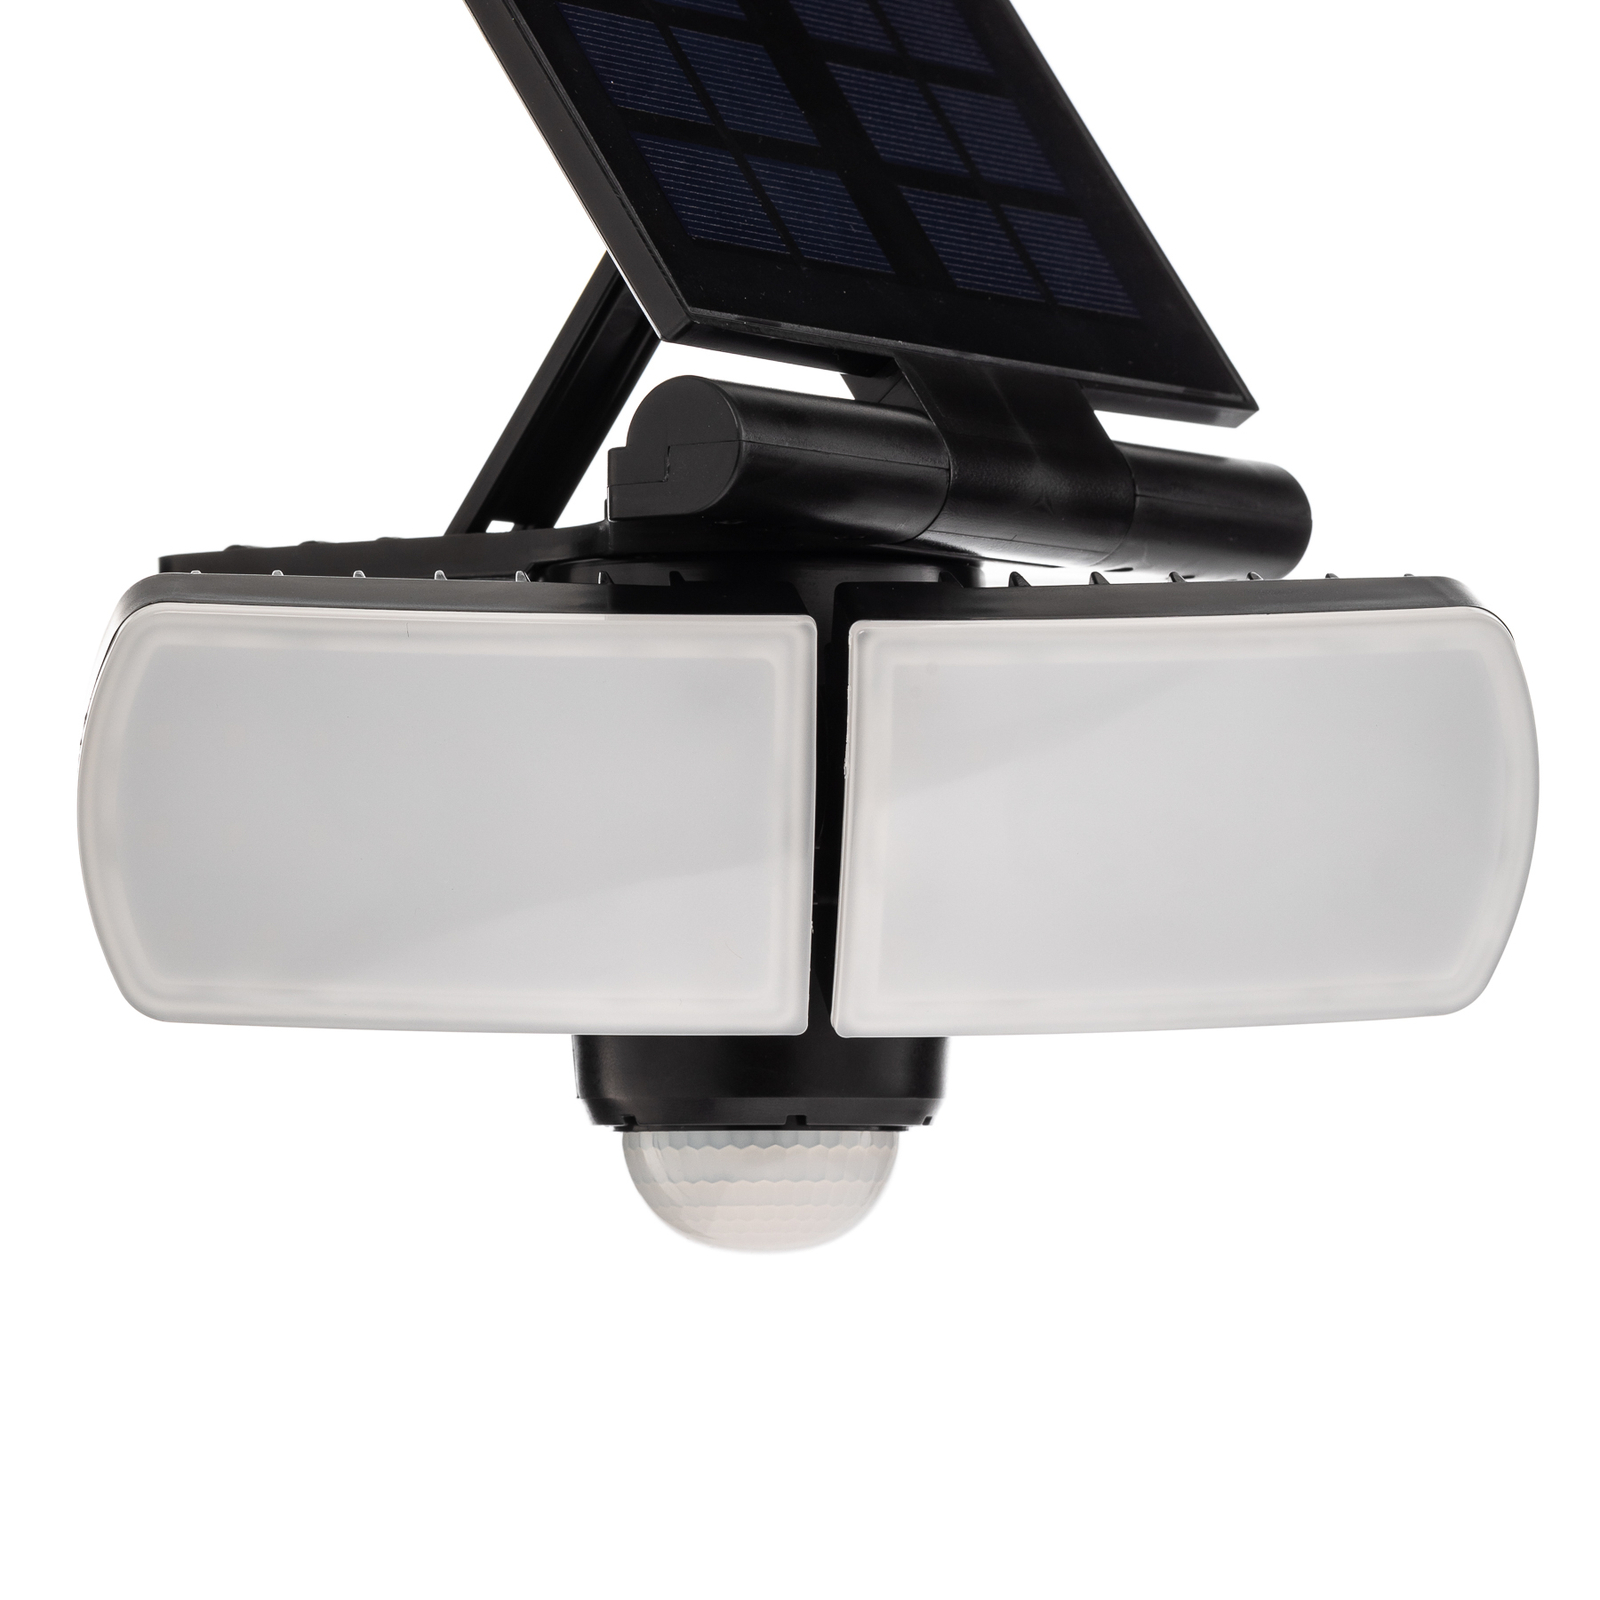 Prios Wrenley applique LED solare con sensore